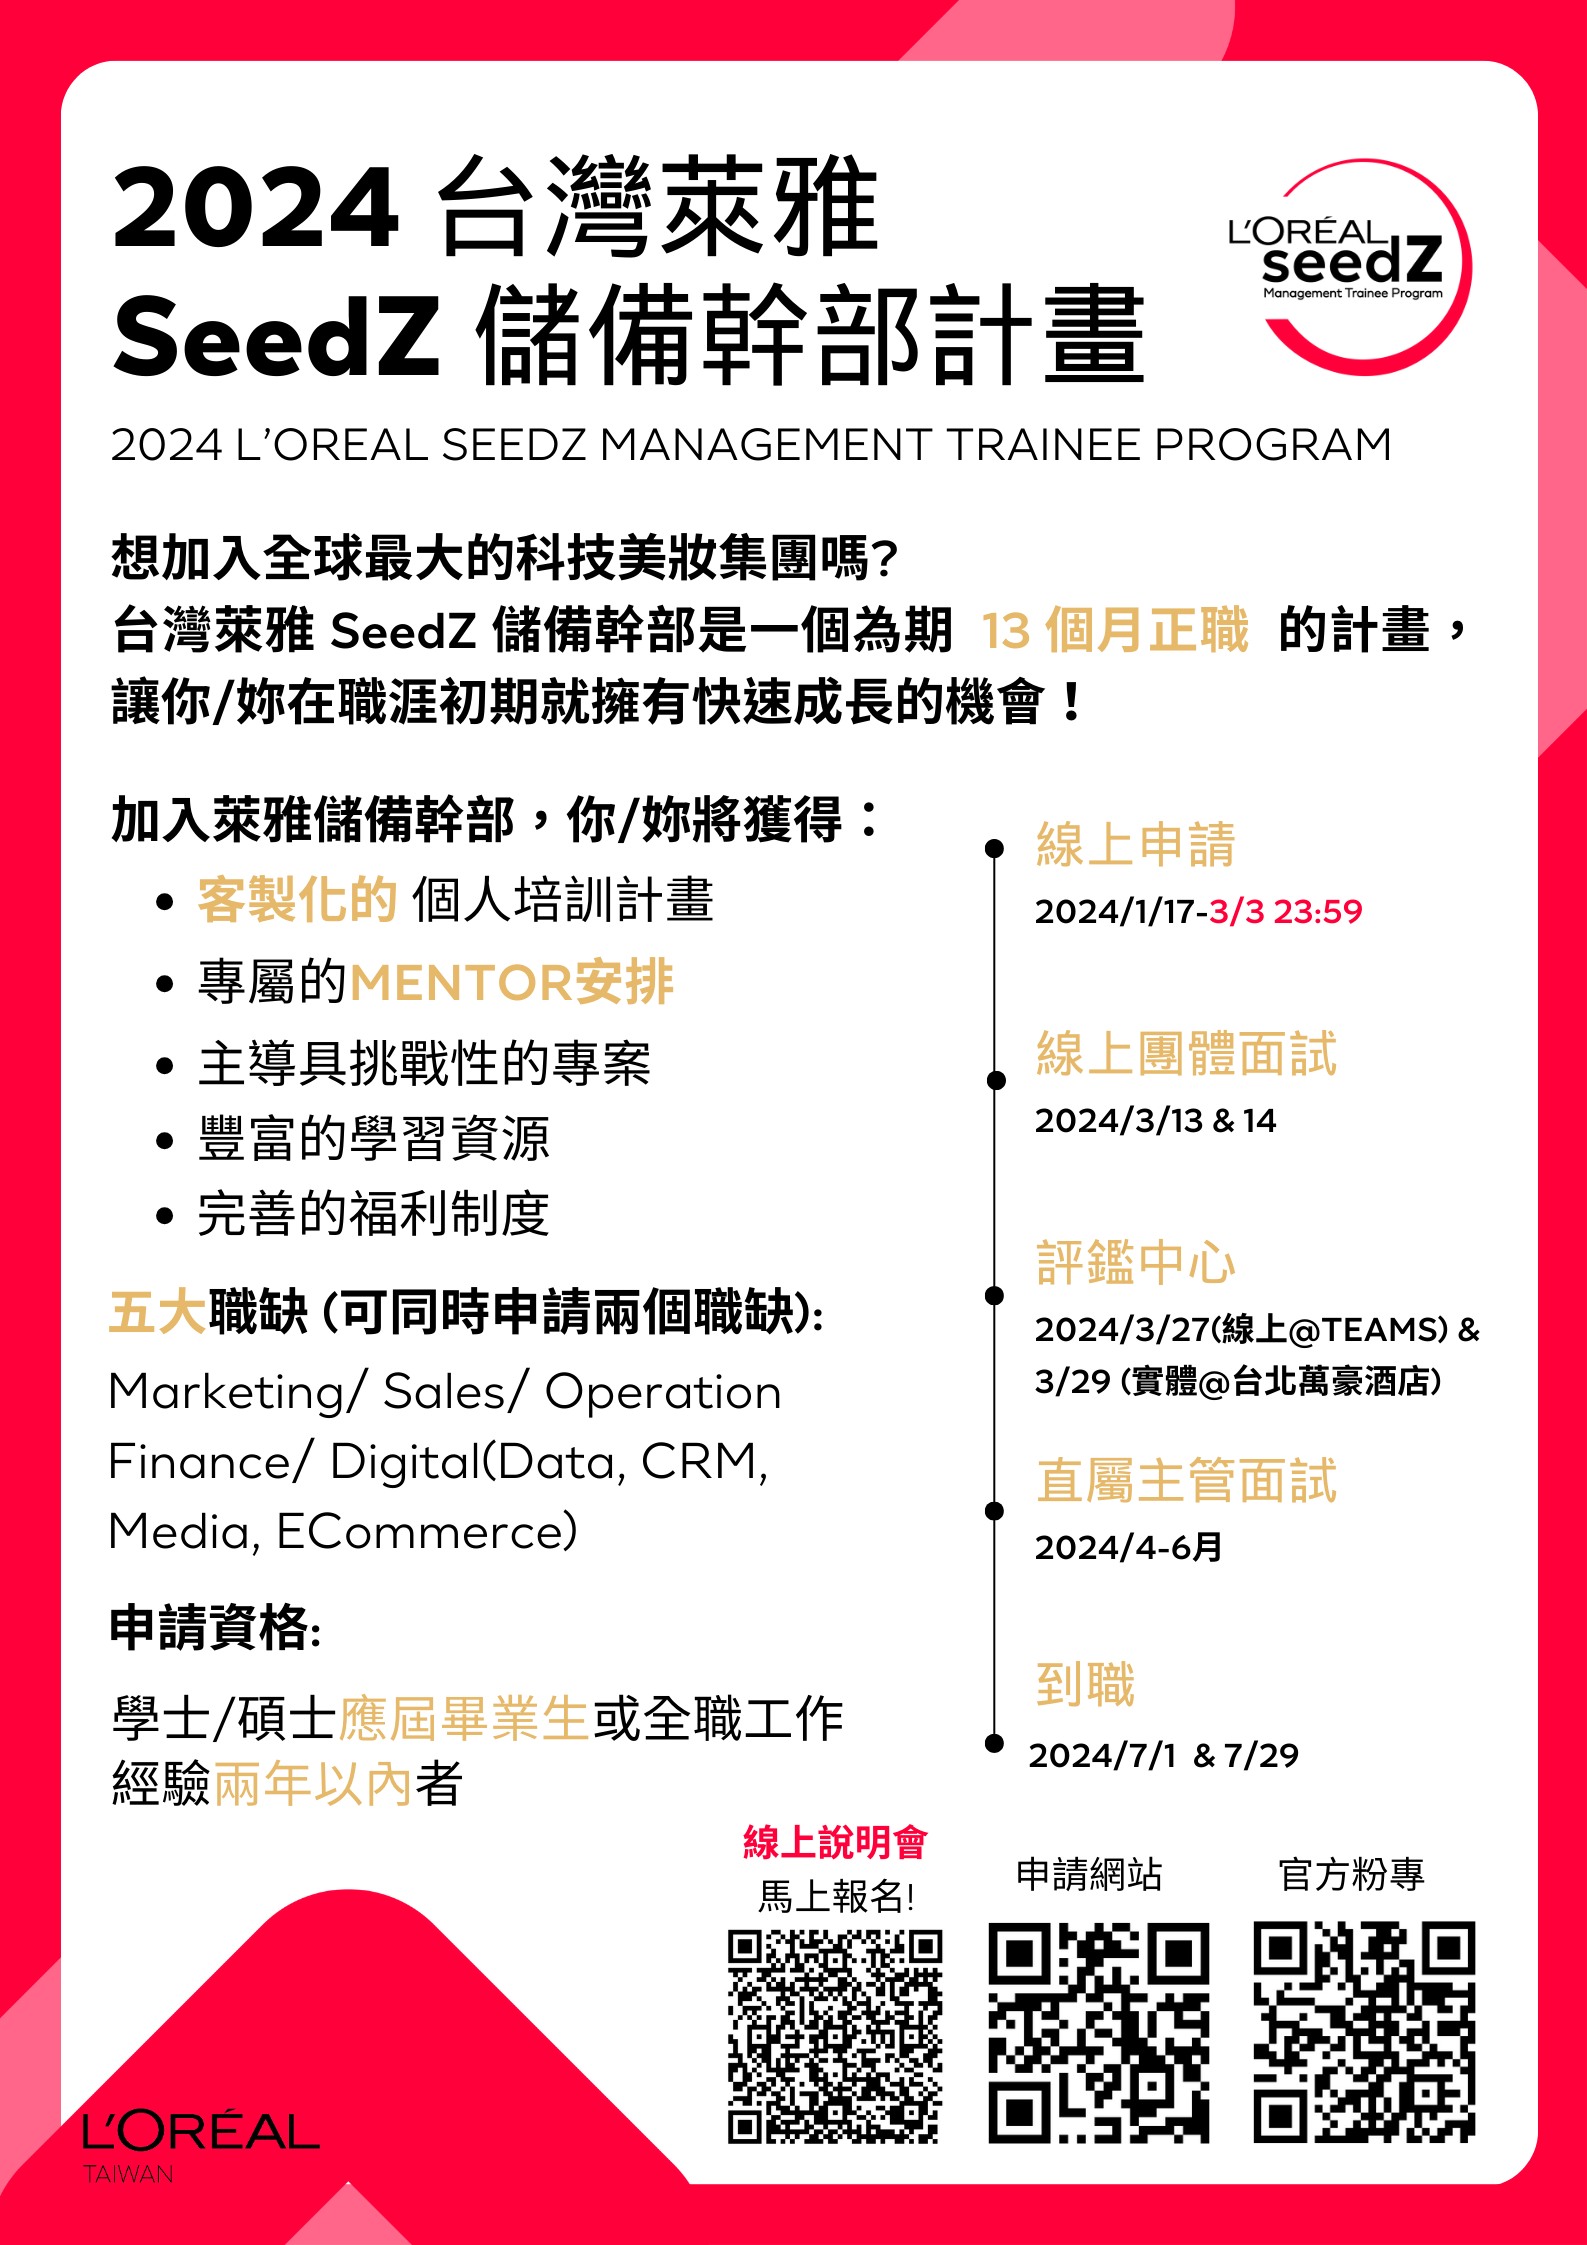 2024 台灣萊雅 SeedZ儲備幹部計畫